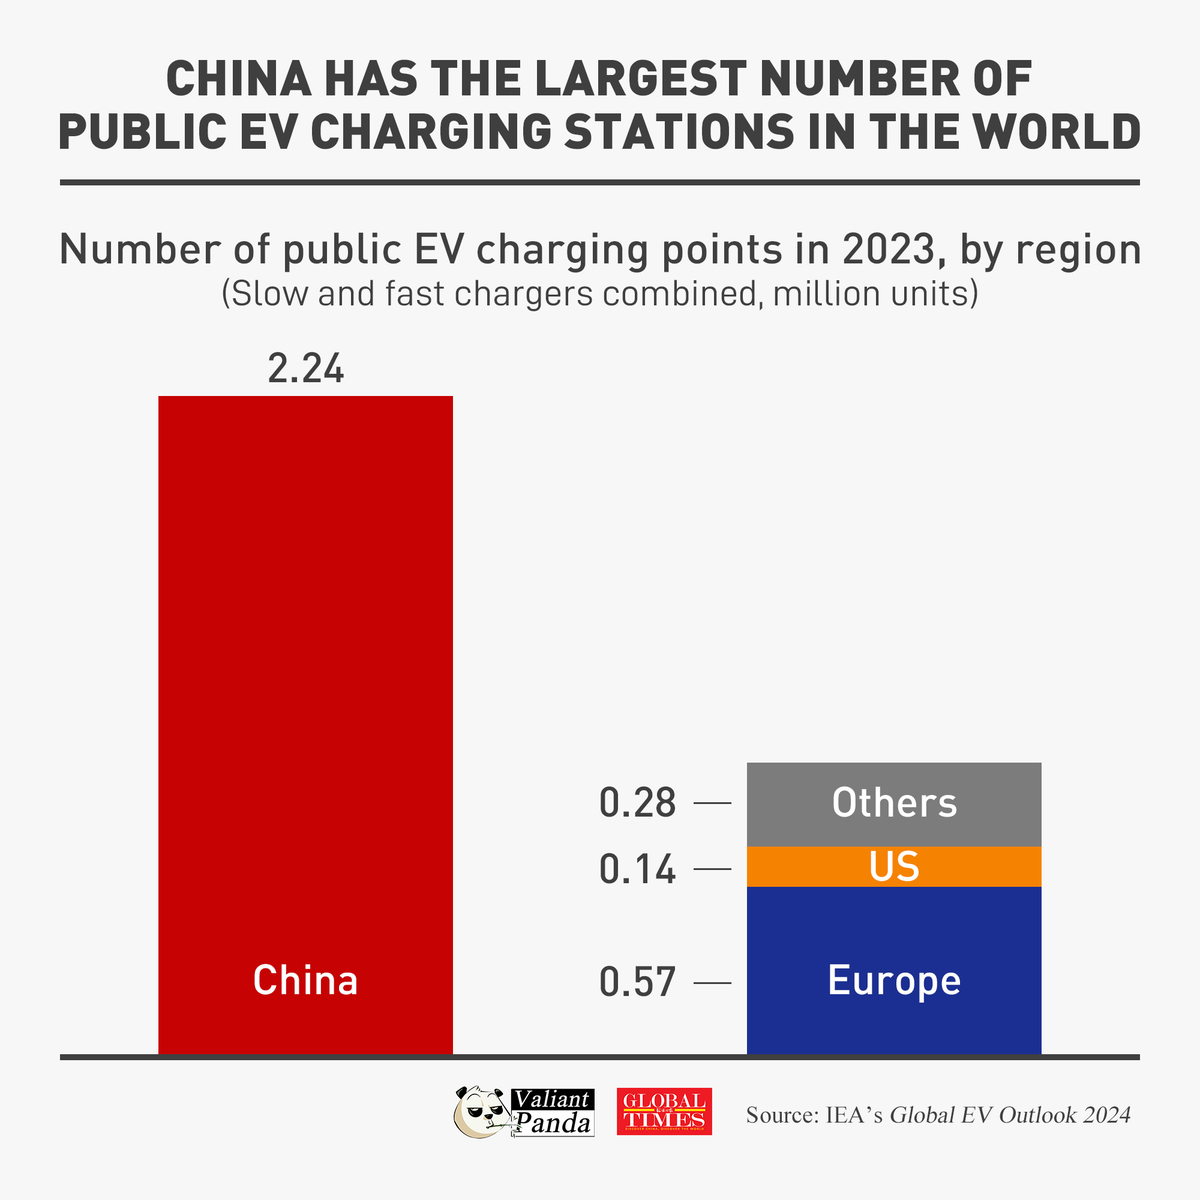 🇨🇳🇪🇺 🔴 أنشأت الصين أكبر بنية تحتية عامة لشحن السيارات الكهربائية في العالم. عدد نقاط شحن السيارات الكهربائية العامة في عام 2023: أكثر من أوروبا بأكملها 4 مرات أكثر من الولايات المتحدة 16 مرة @_ValiantPanda_